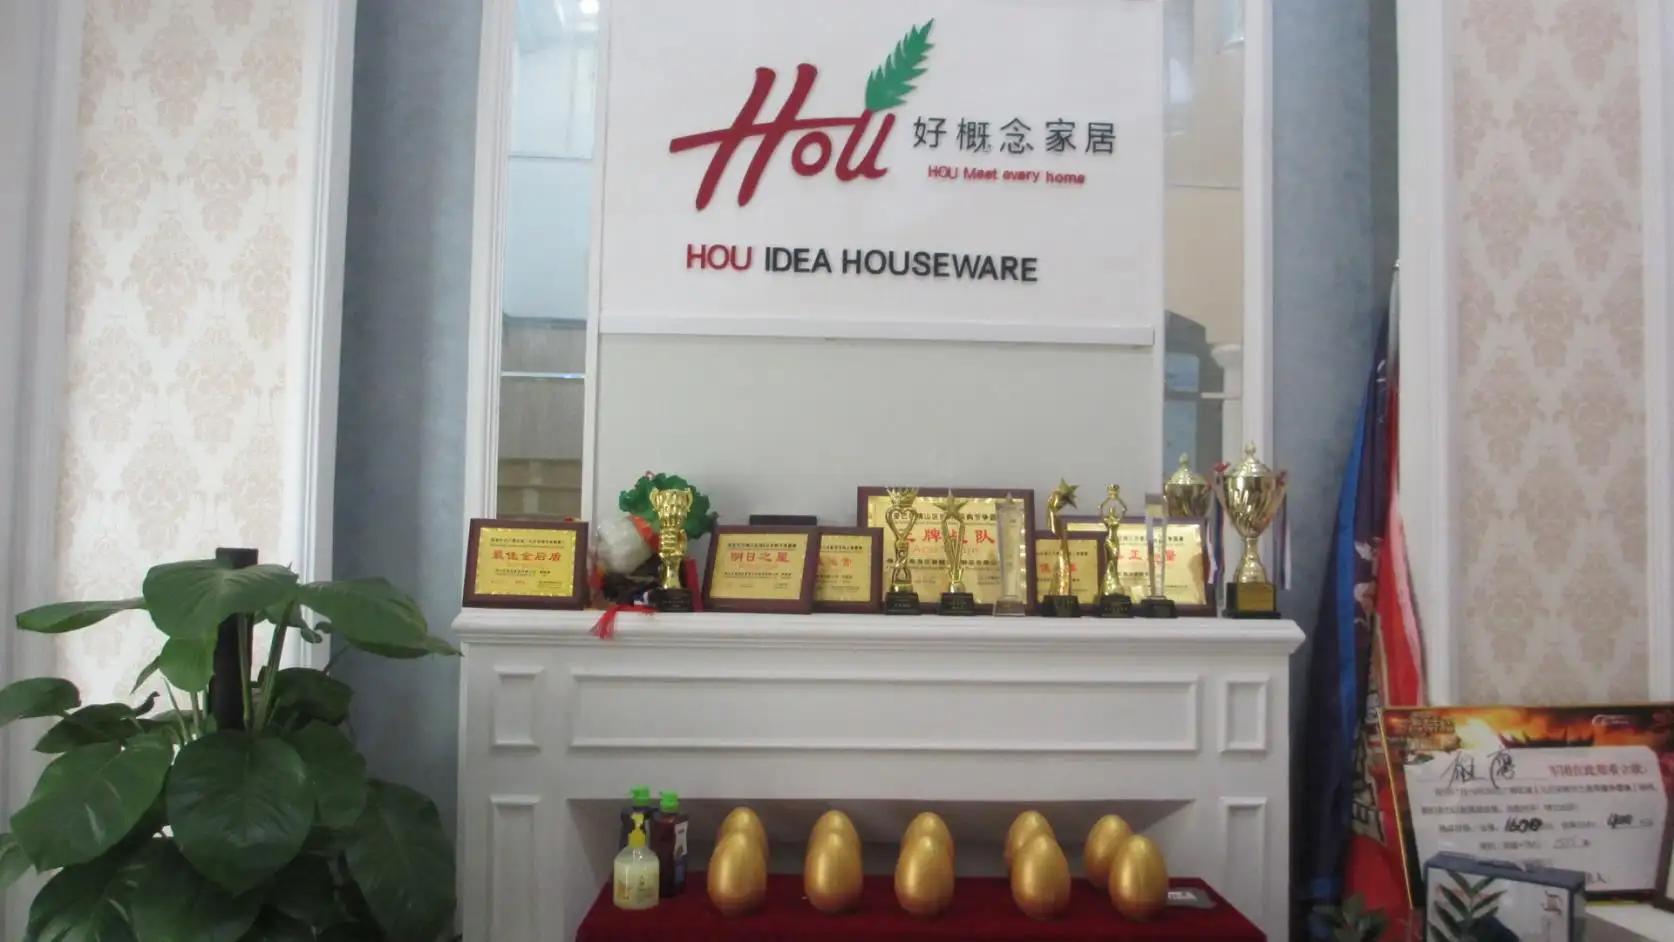 Foshan Hou Idea Houseware Co., Ltd.